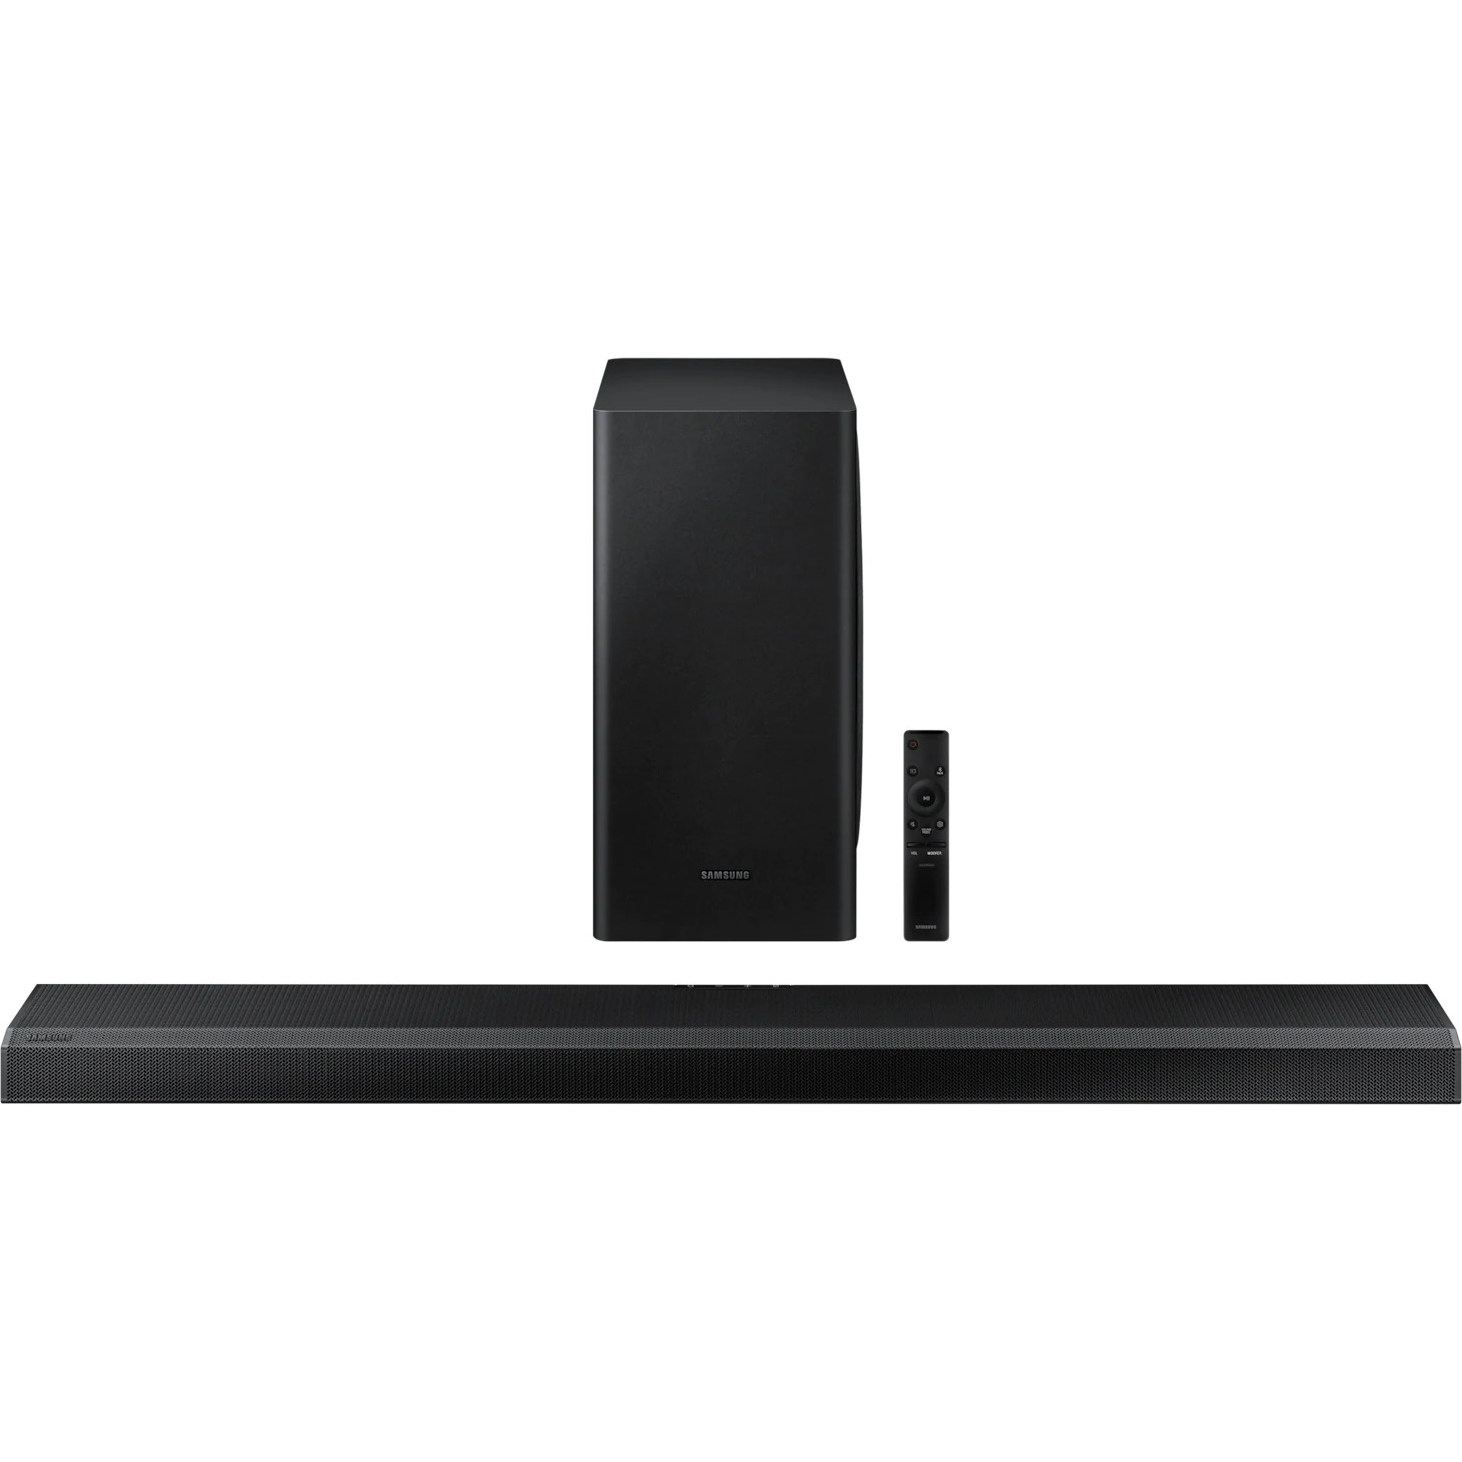 Саундбар Samsung HW-Q800T, цвет черный, размер 40,3*20,5*40,3 см - фото 9